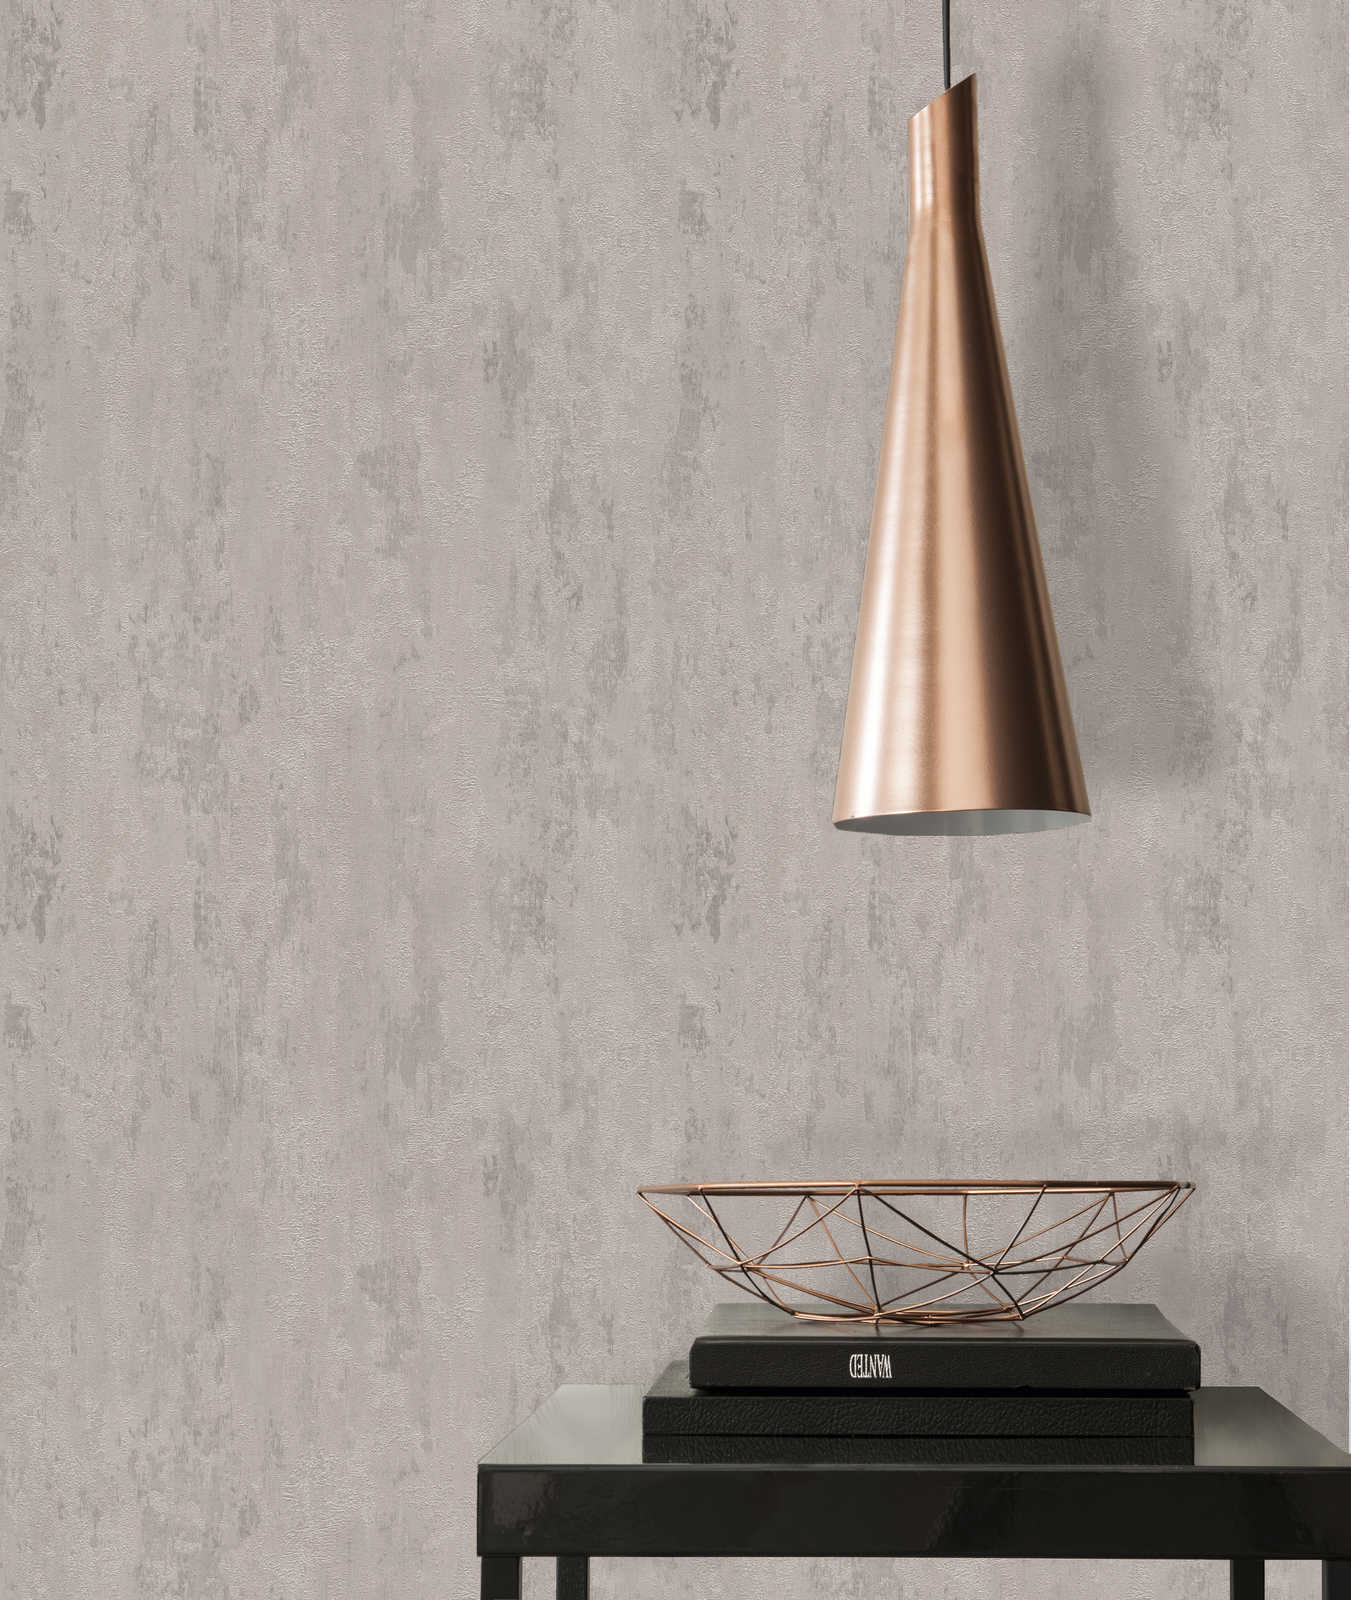             behang in industriële stijl met textuureffect - crème, grijs, metallic
        